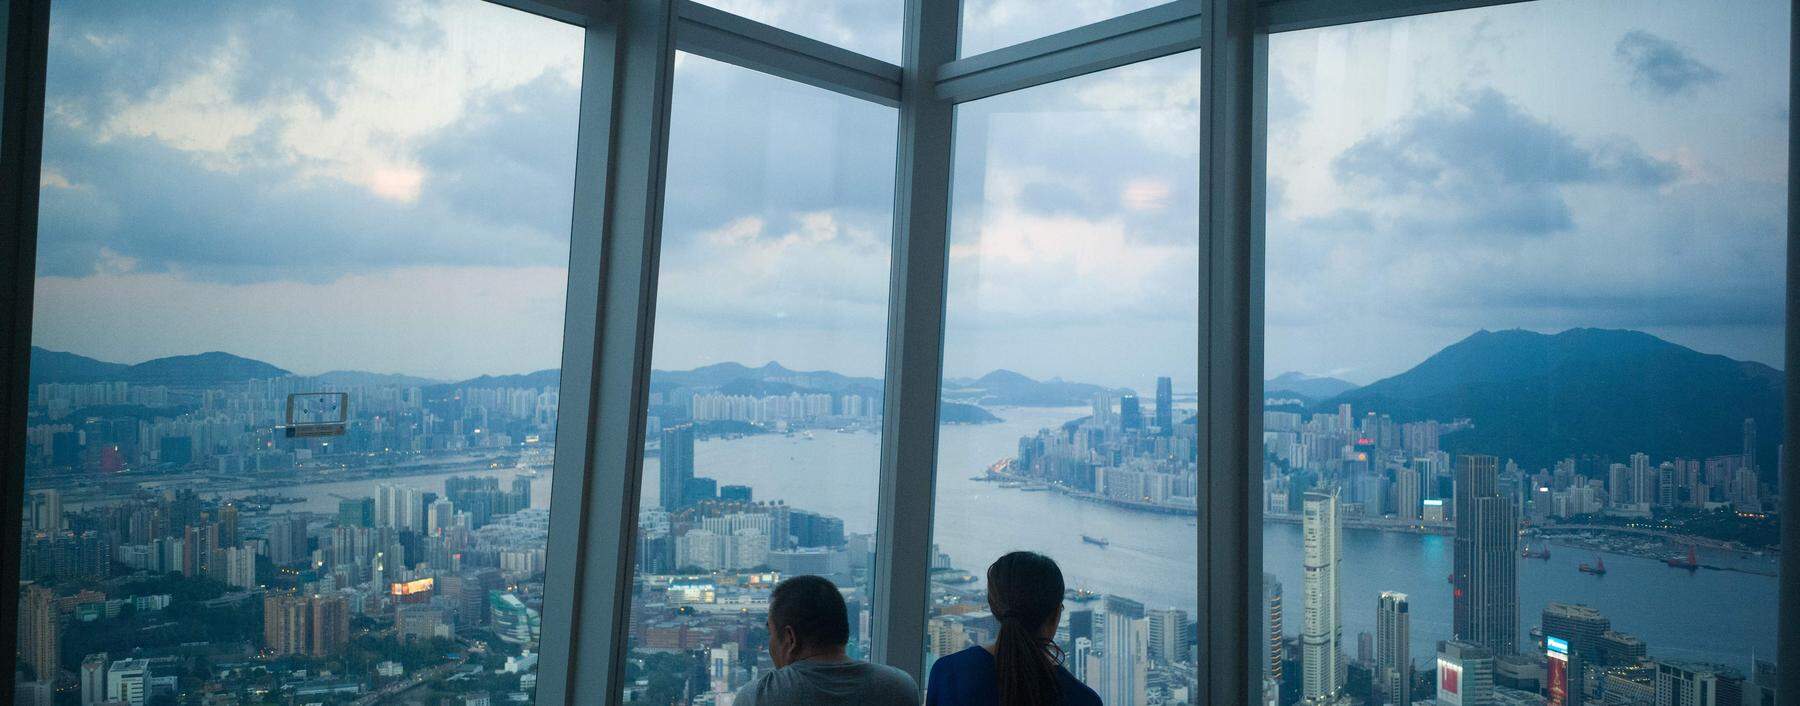 Über Jahrzehnte hinweg war Hongkong die Wirtschaftsmetropole Asiens. Dies hat sich in den vergangenen Jahren geändert.